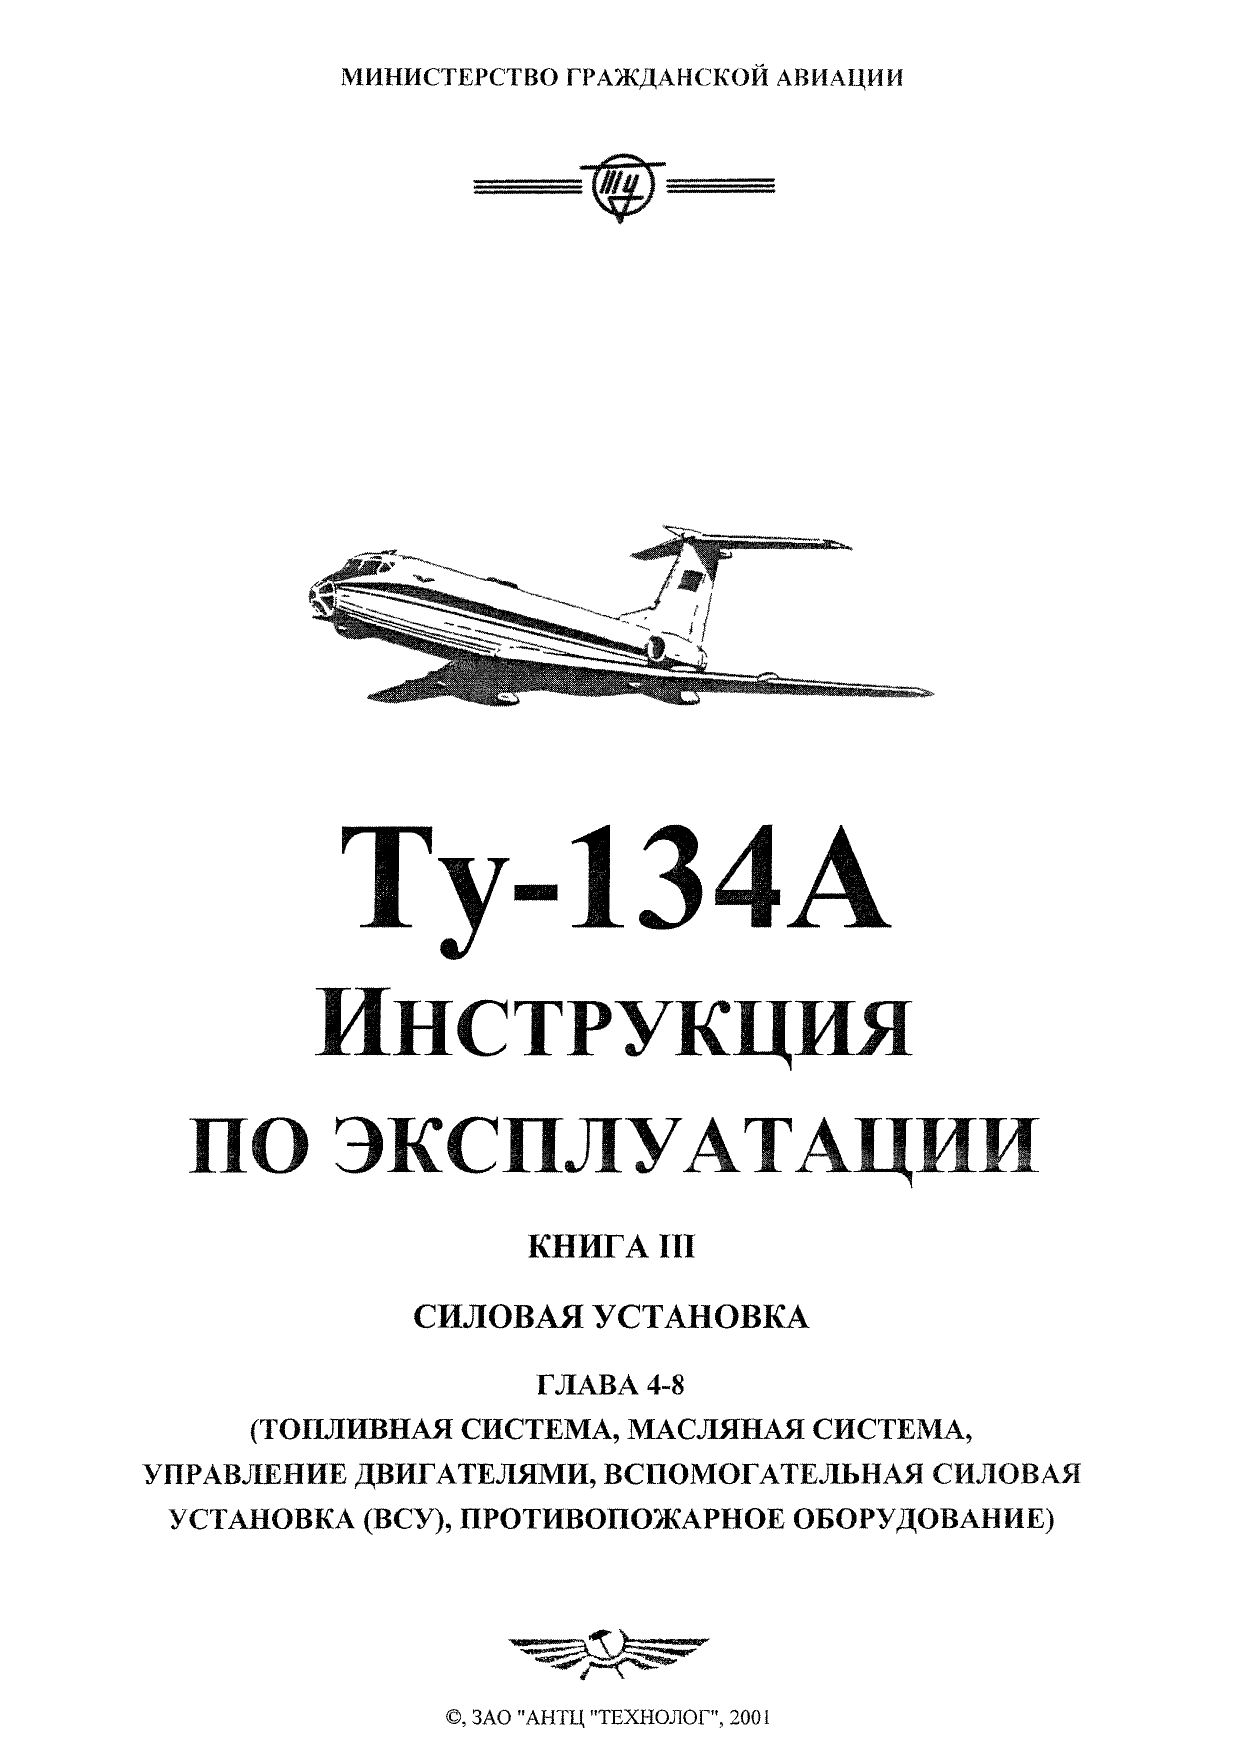 Tu-134_IYE_kn3_ch2_001